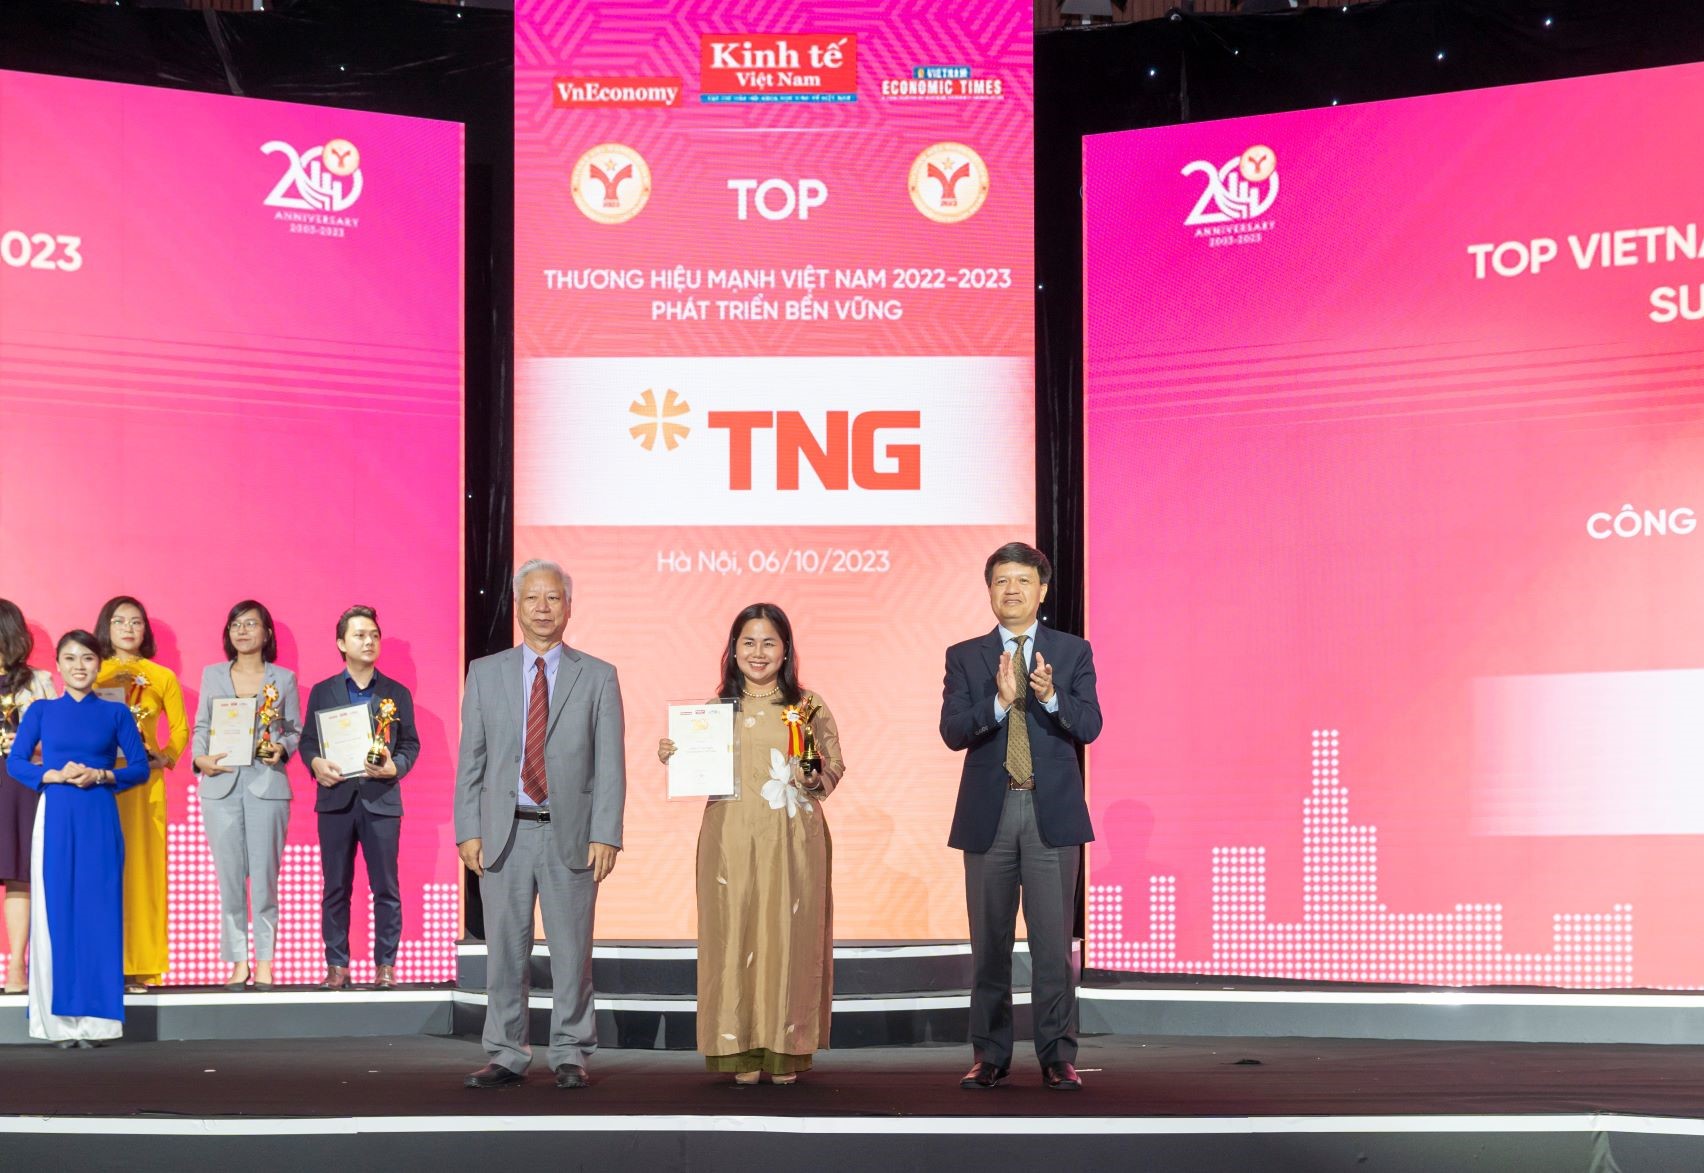 Đại diện TNG Holdings Vietnam nhận giải Thương hiệu mạnh 2022 - 2023. Ảnh: TNG.